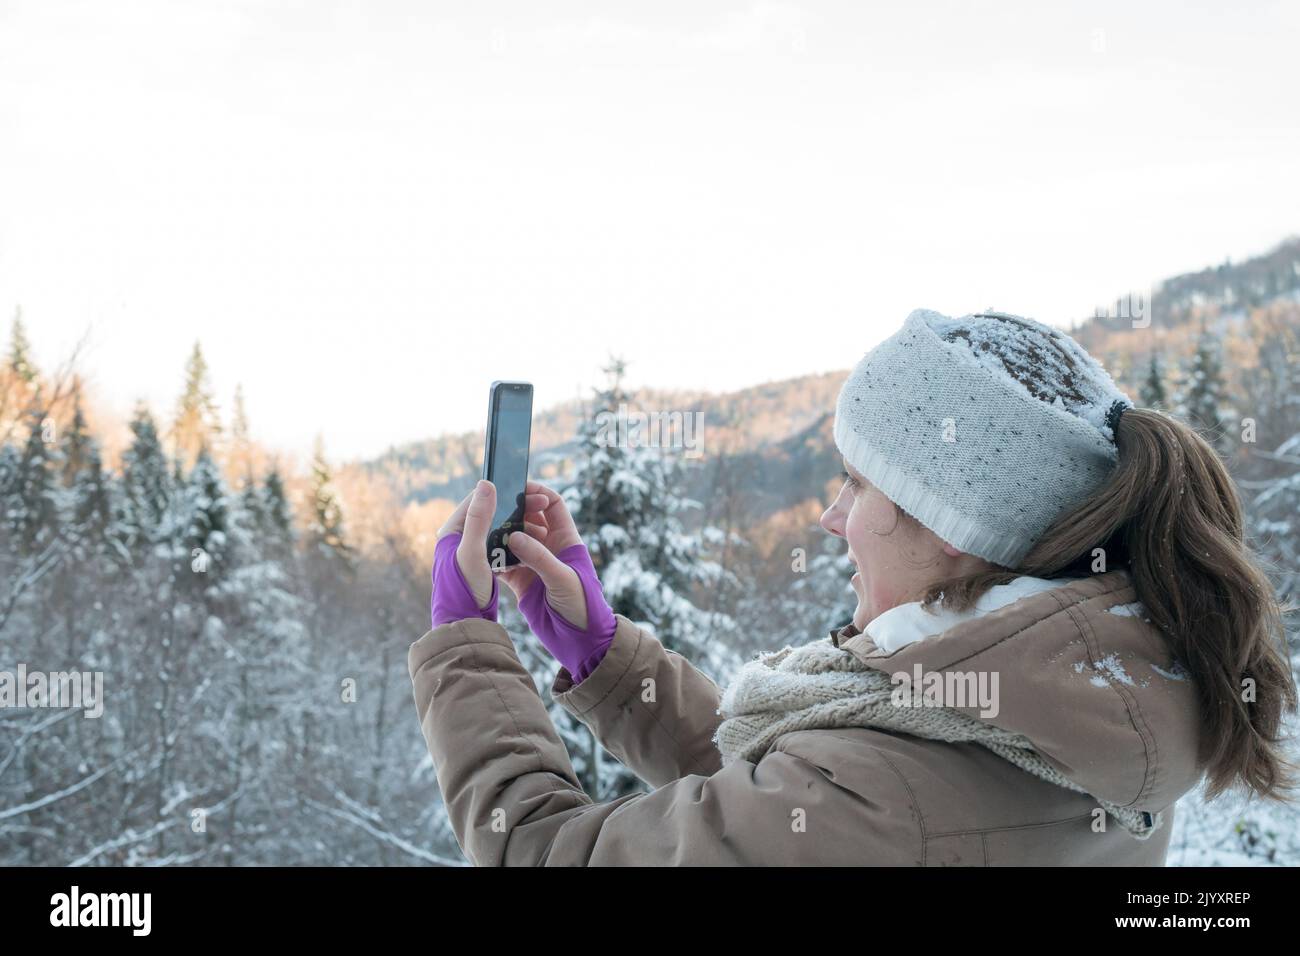 Donna che guarda al display mobile, fotografa i paesaggi invernali della natura. Ragazza caucasica di mezza età con telefono cellulare nella foresta coperta di neve. Foto Stock